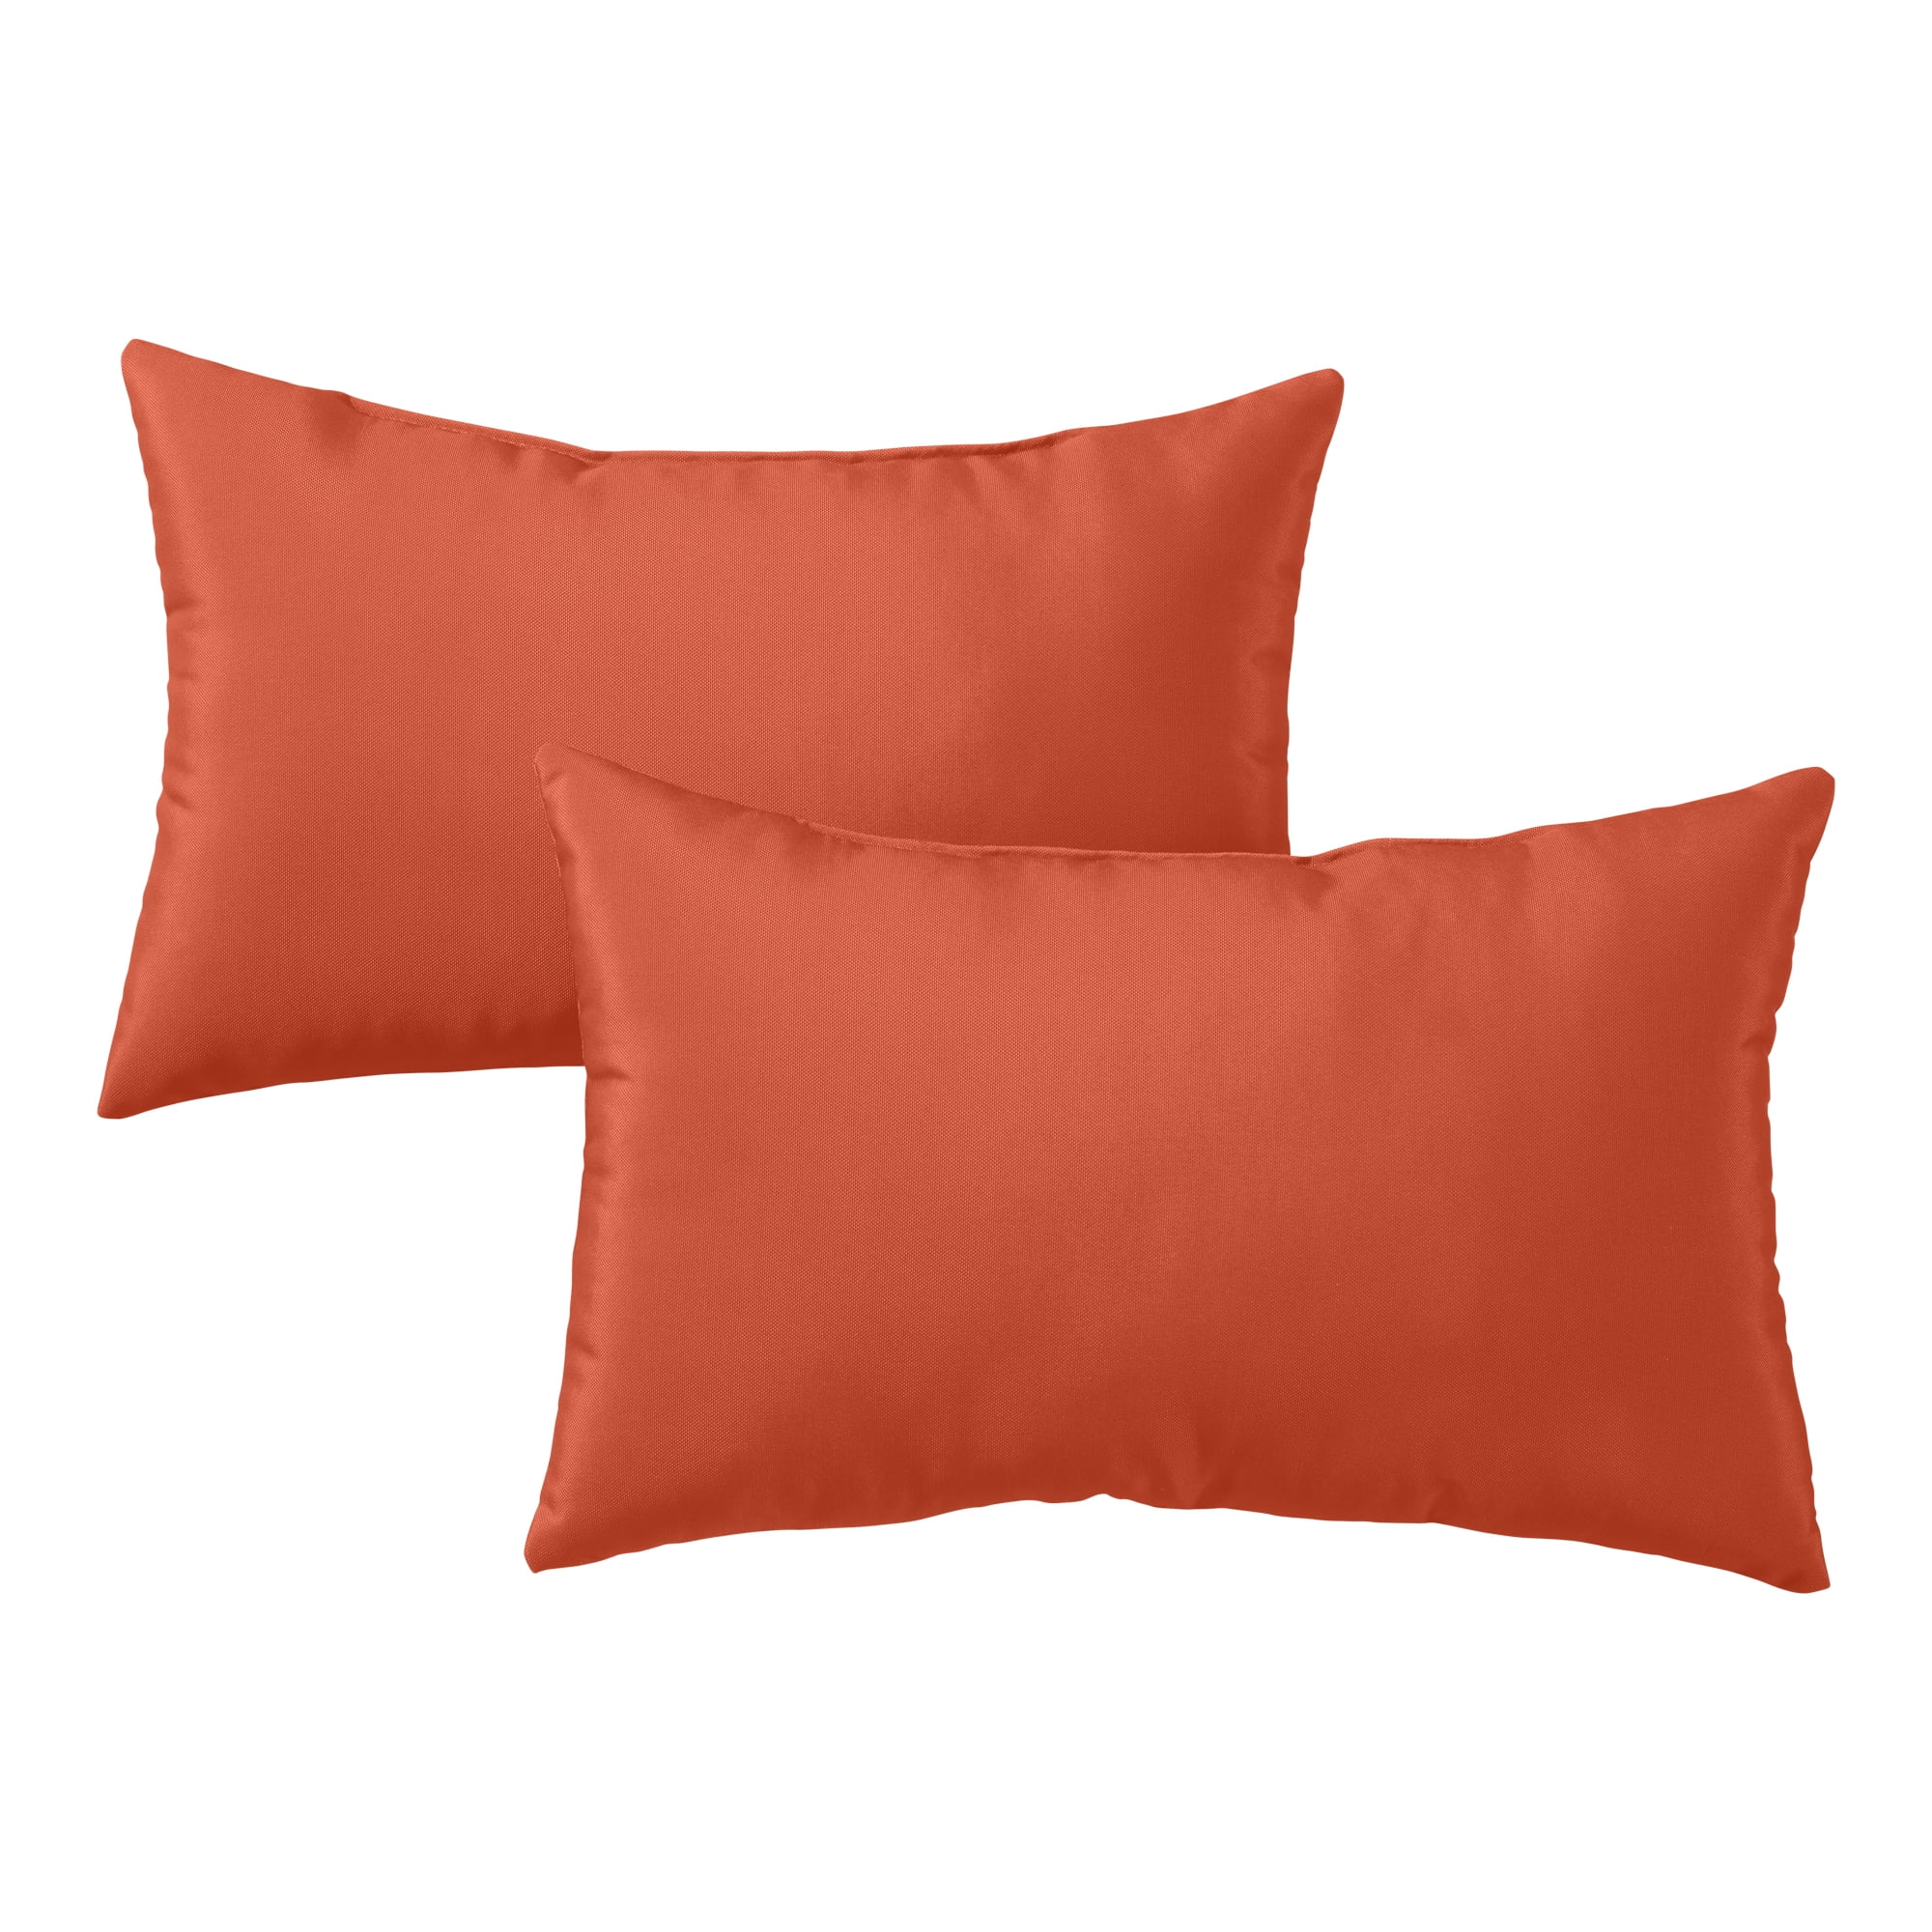 2pc Outdoor/Indoor Rectangular Throw Pillow Set Marlow Aqua Blue - Pillow  Perfect